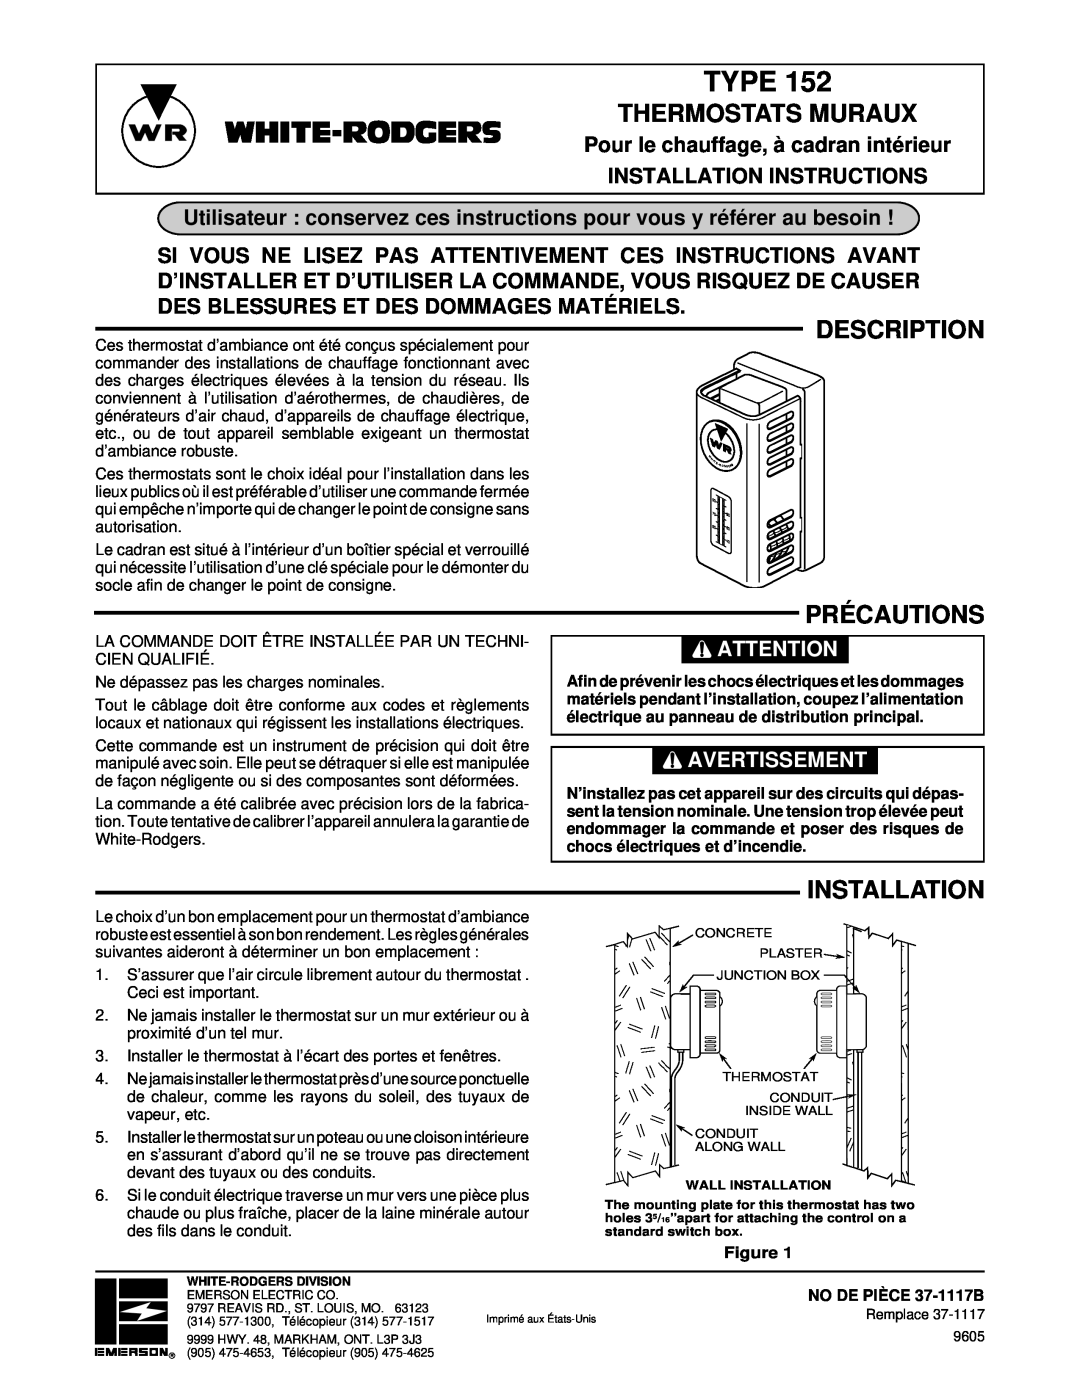 White Rodgers TYPE 152 Thermostats Muraux, Précautions, Pour le chauffage, à cadran intérieur, Type, Description 